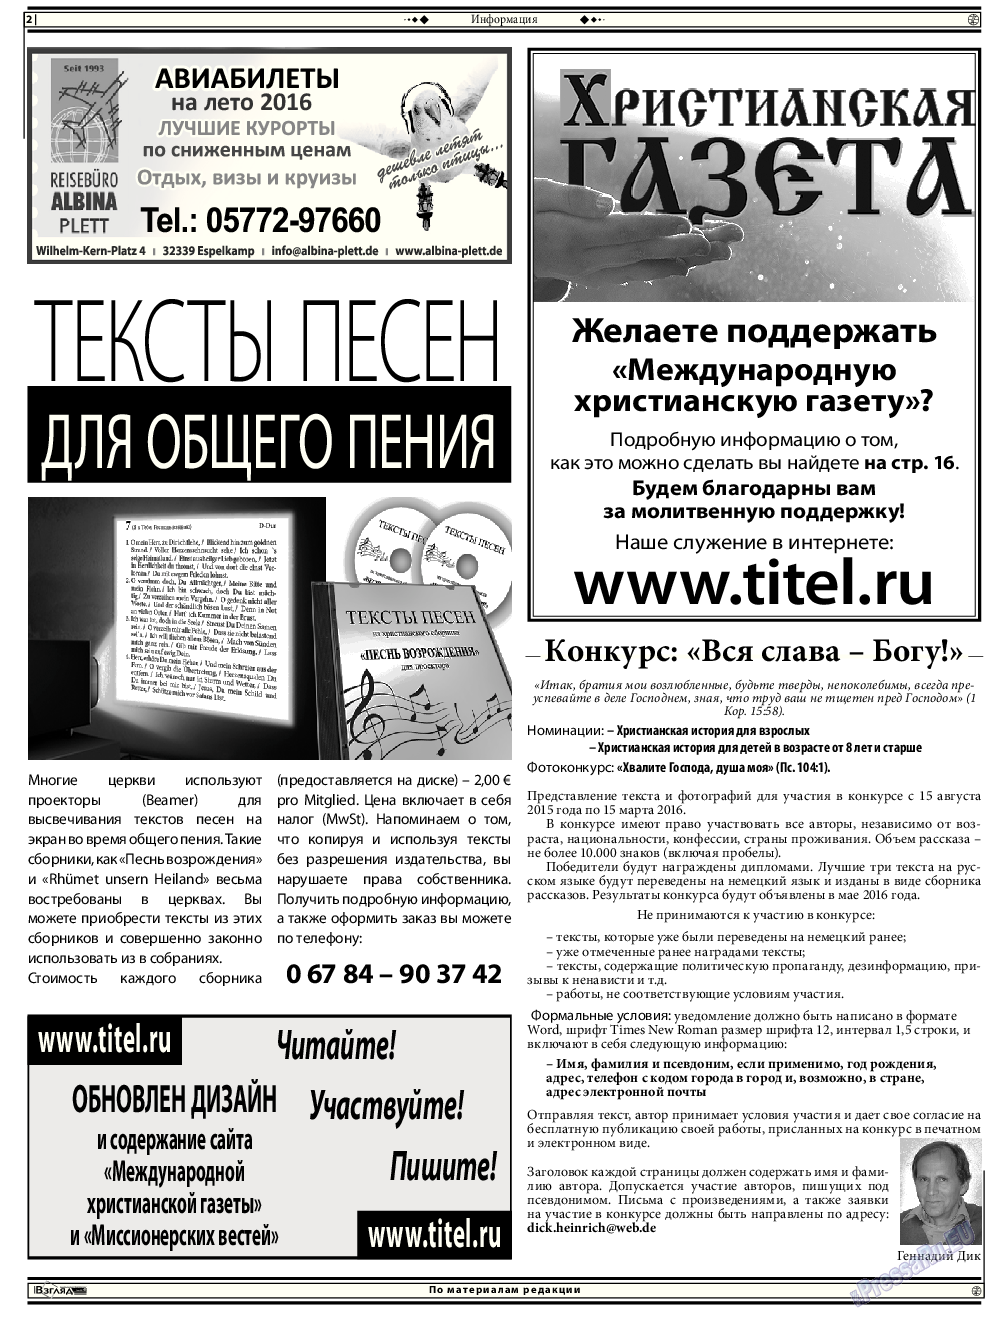 Христианская газета, газета. 2015 №11 стр.16